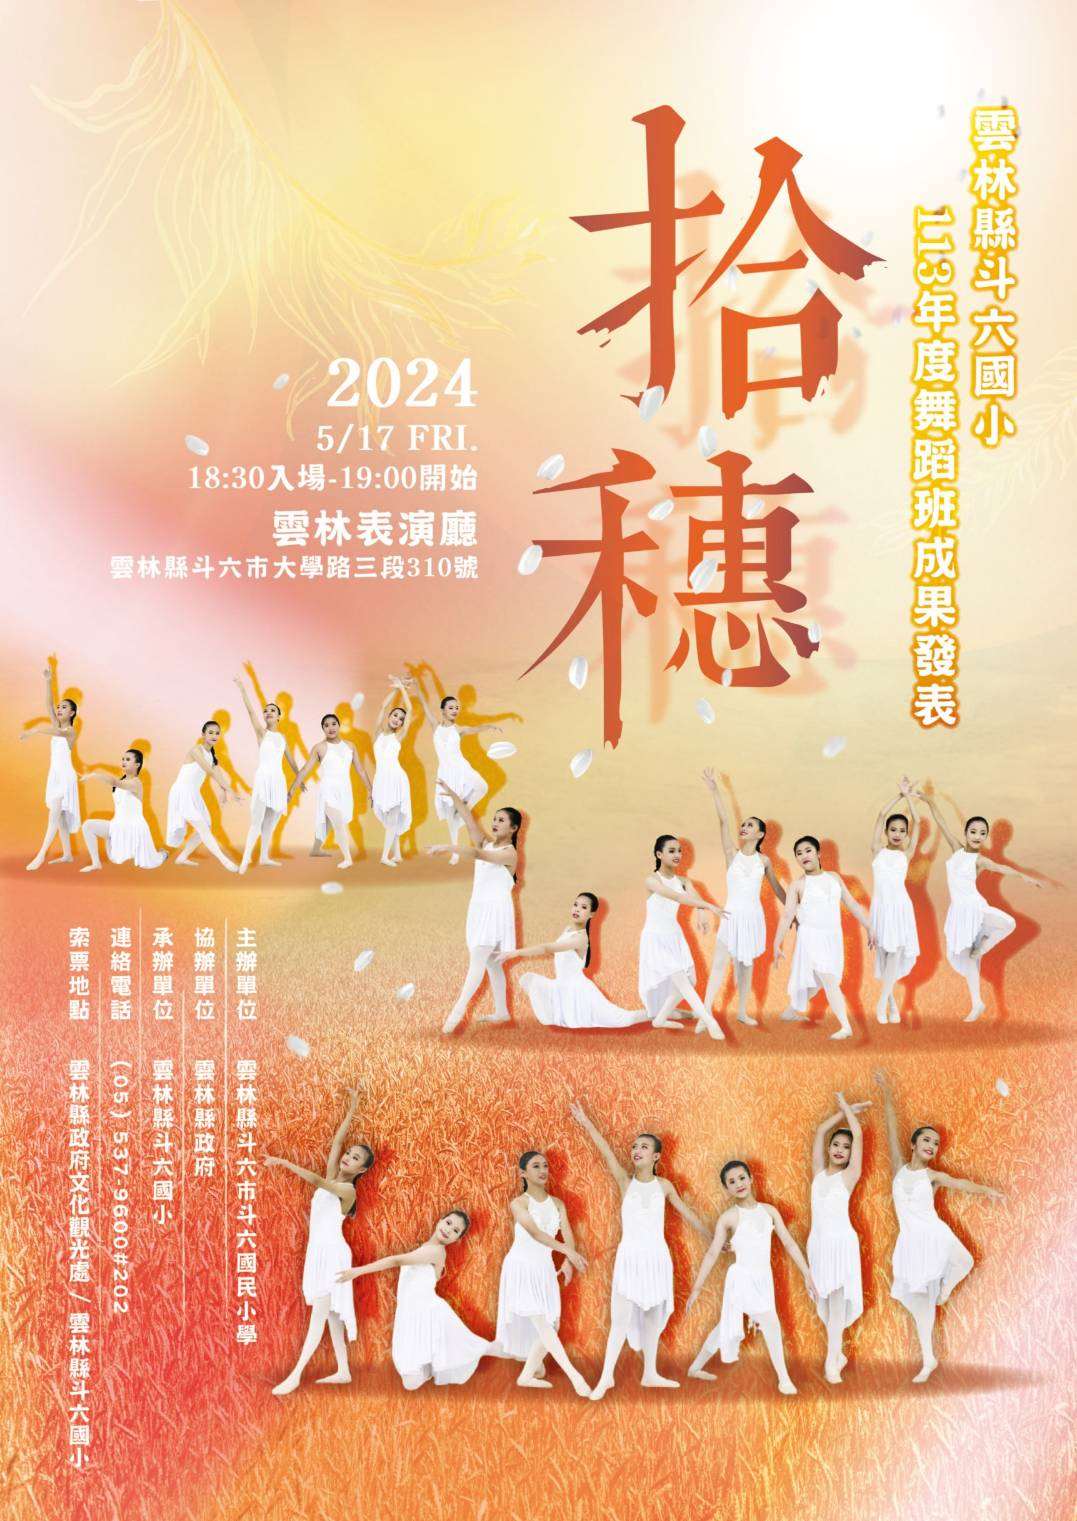 斗六國小舞蹈班成果發表會17日登場　歡迎索票蒞臨觀賞